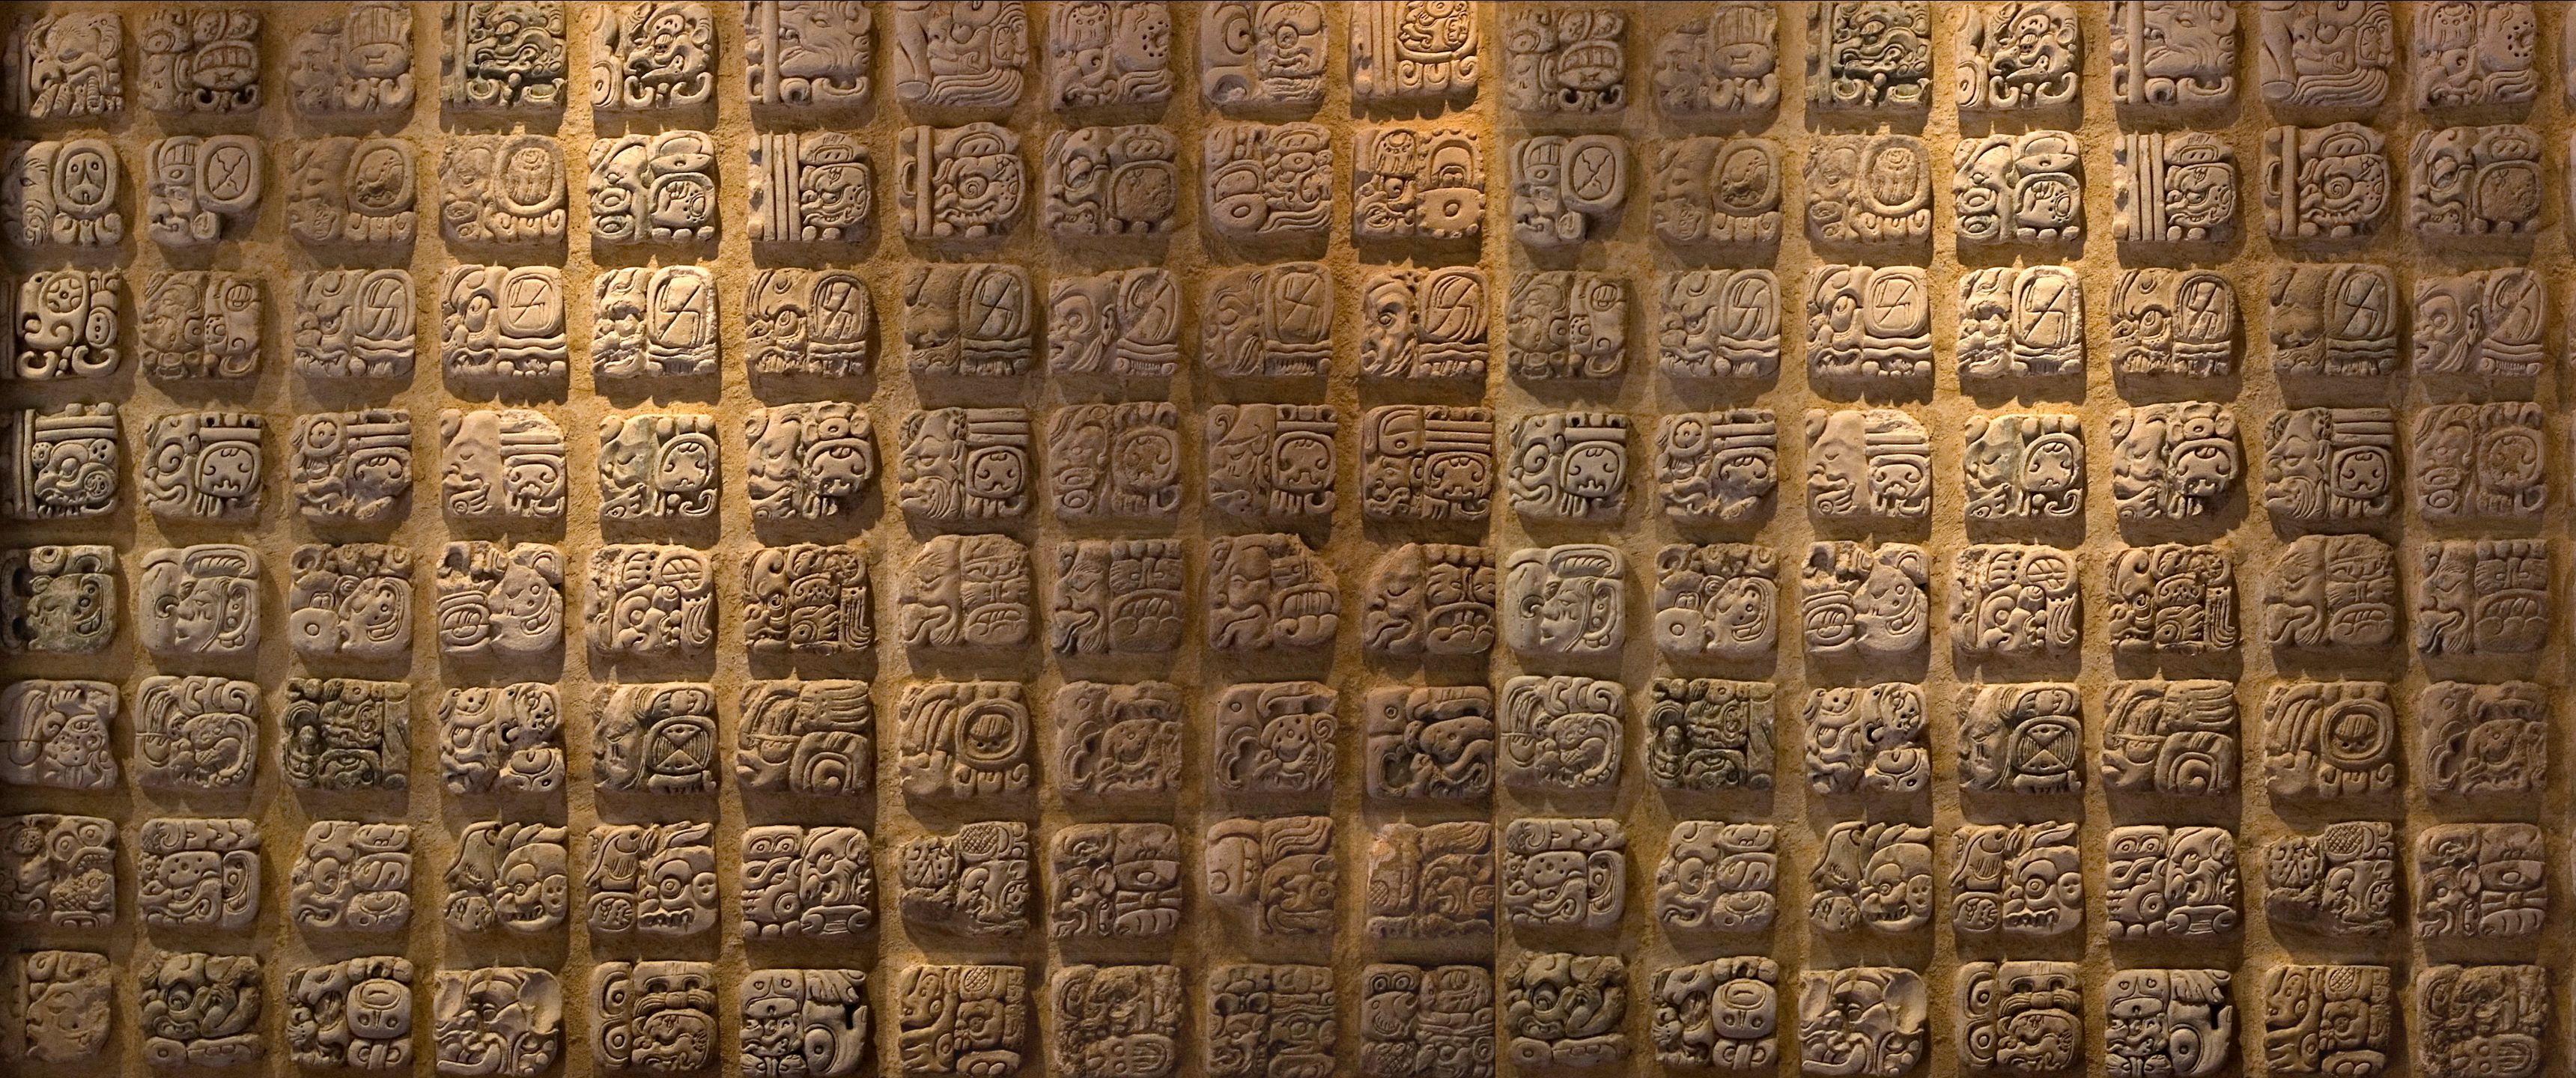 Ultra Wide Ultrawide Stone Wall Mosaic Symbolism Maya Civilization 3440x1440